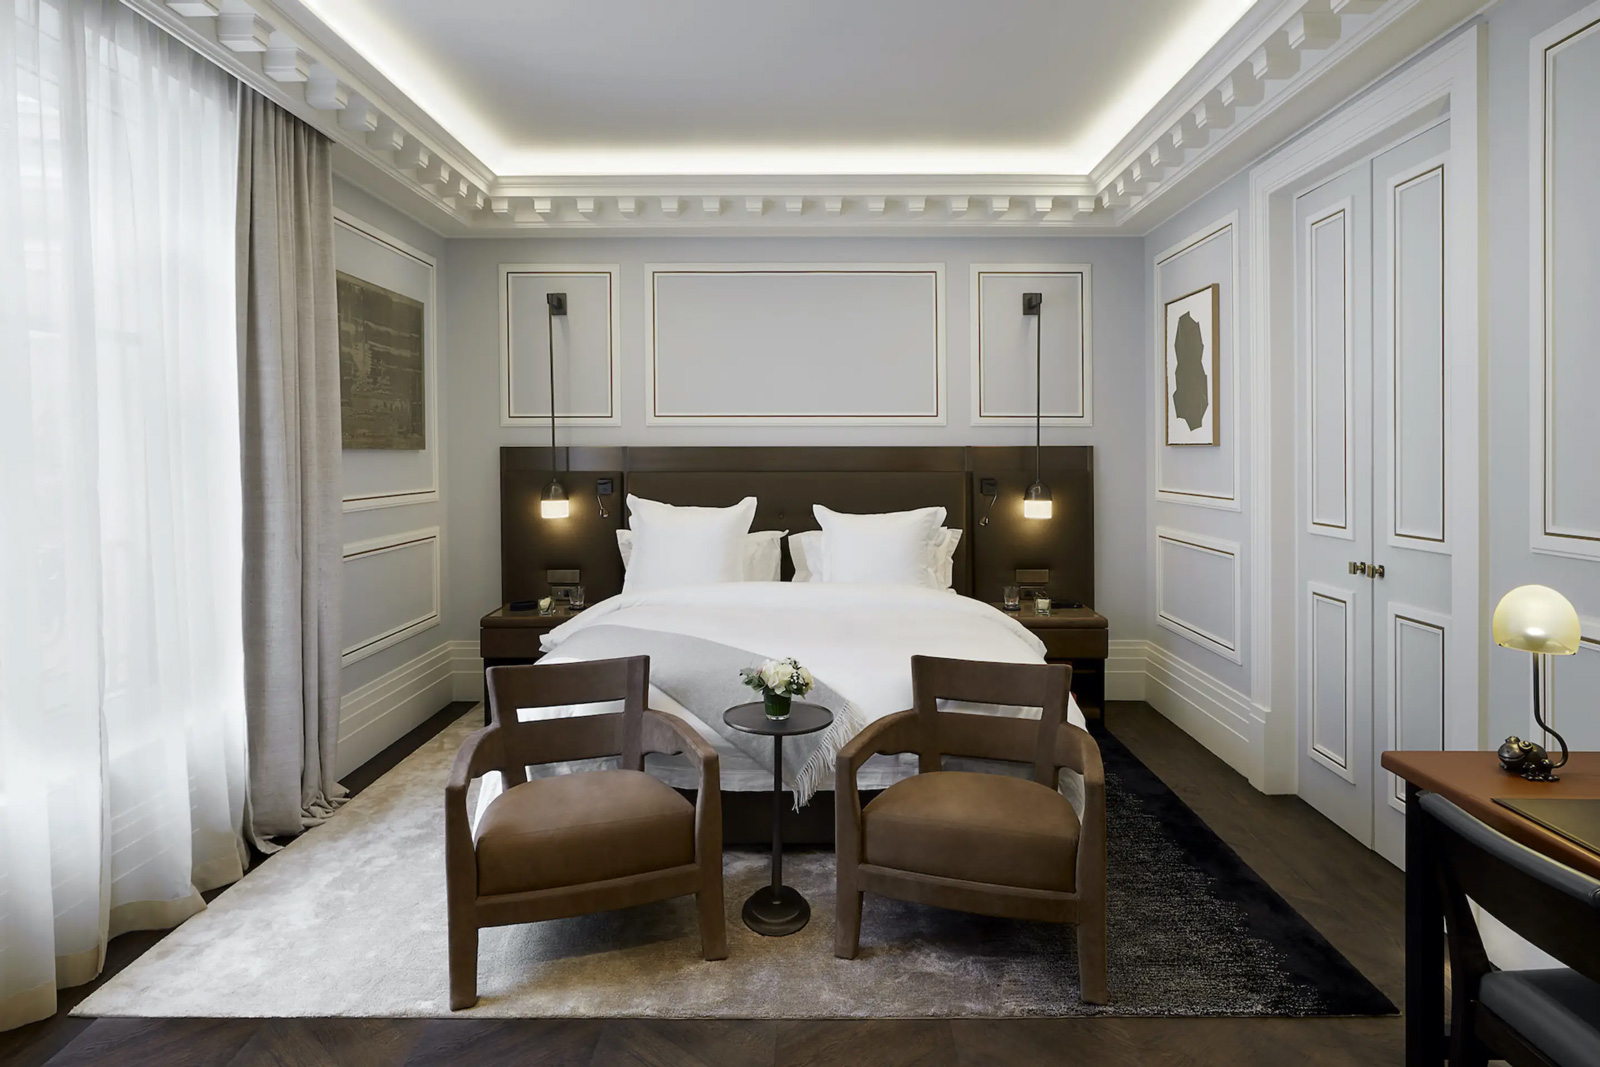 Maison Villeroy, 8th, Paris Luxury Hotel, France, Casol